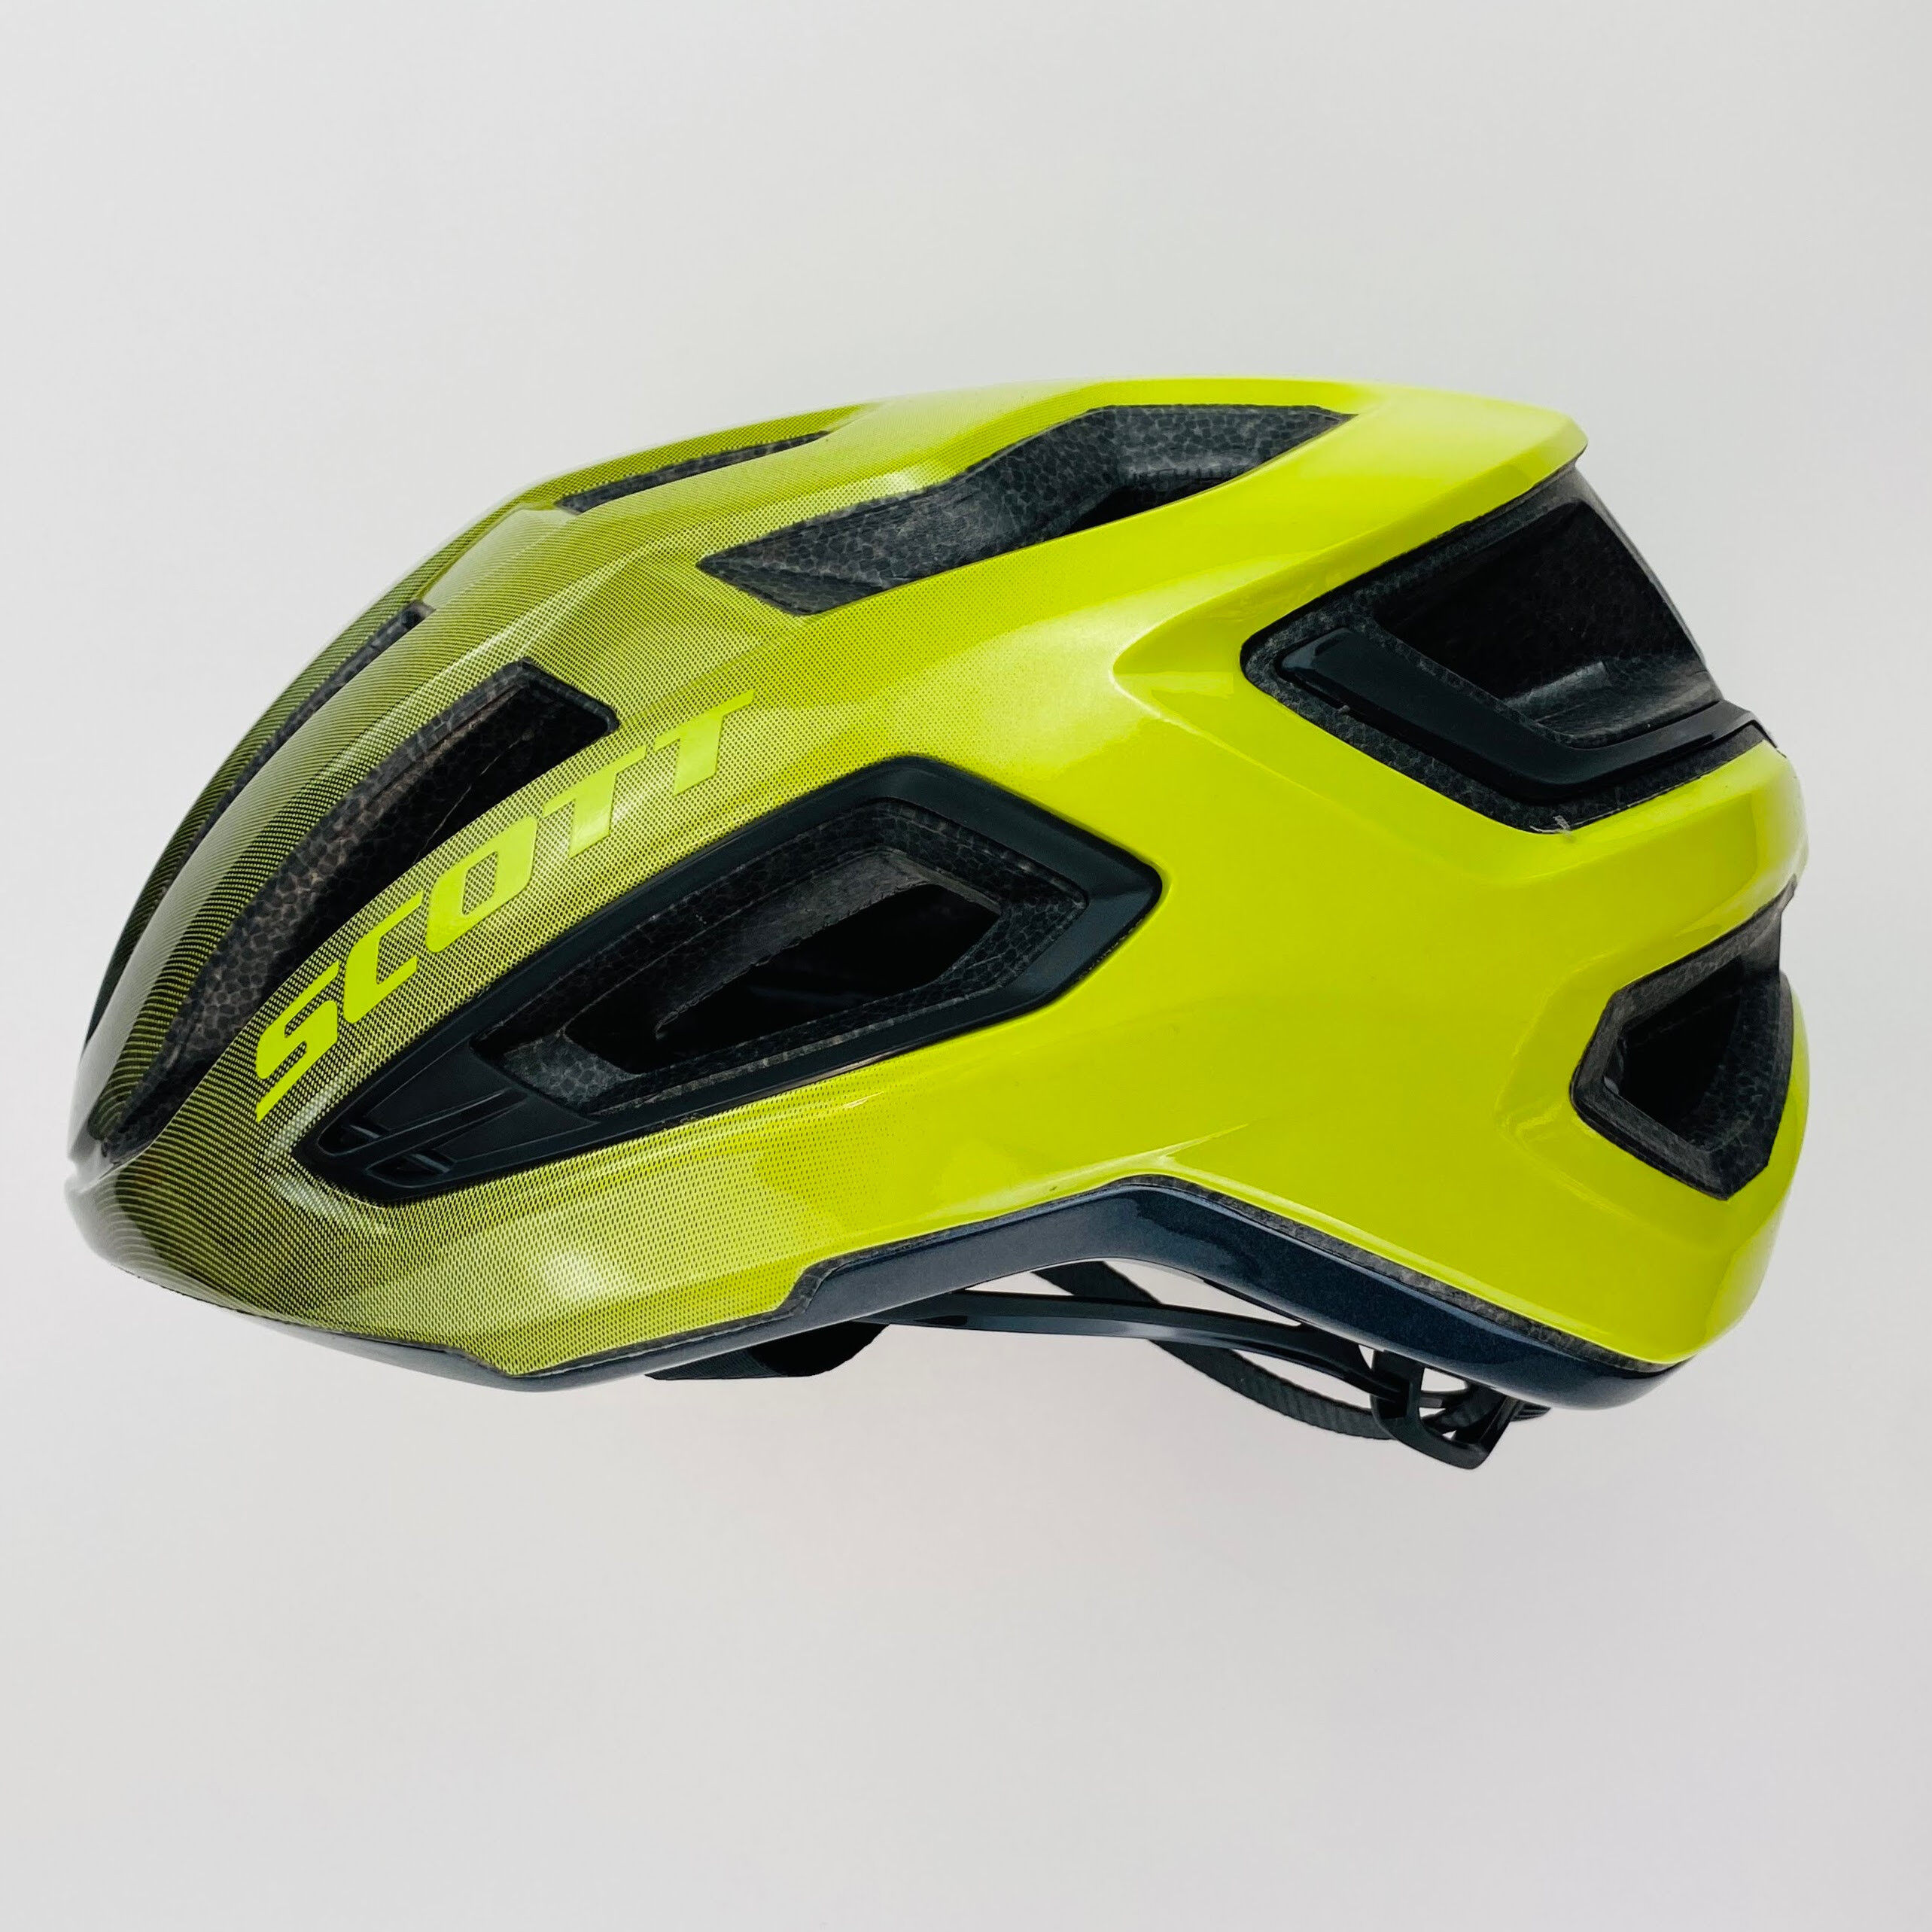 Scott Arx Plus (CE) - Casco per bici di seconda mano - Giallo - L (59 - 61 cm) | Hardloop